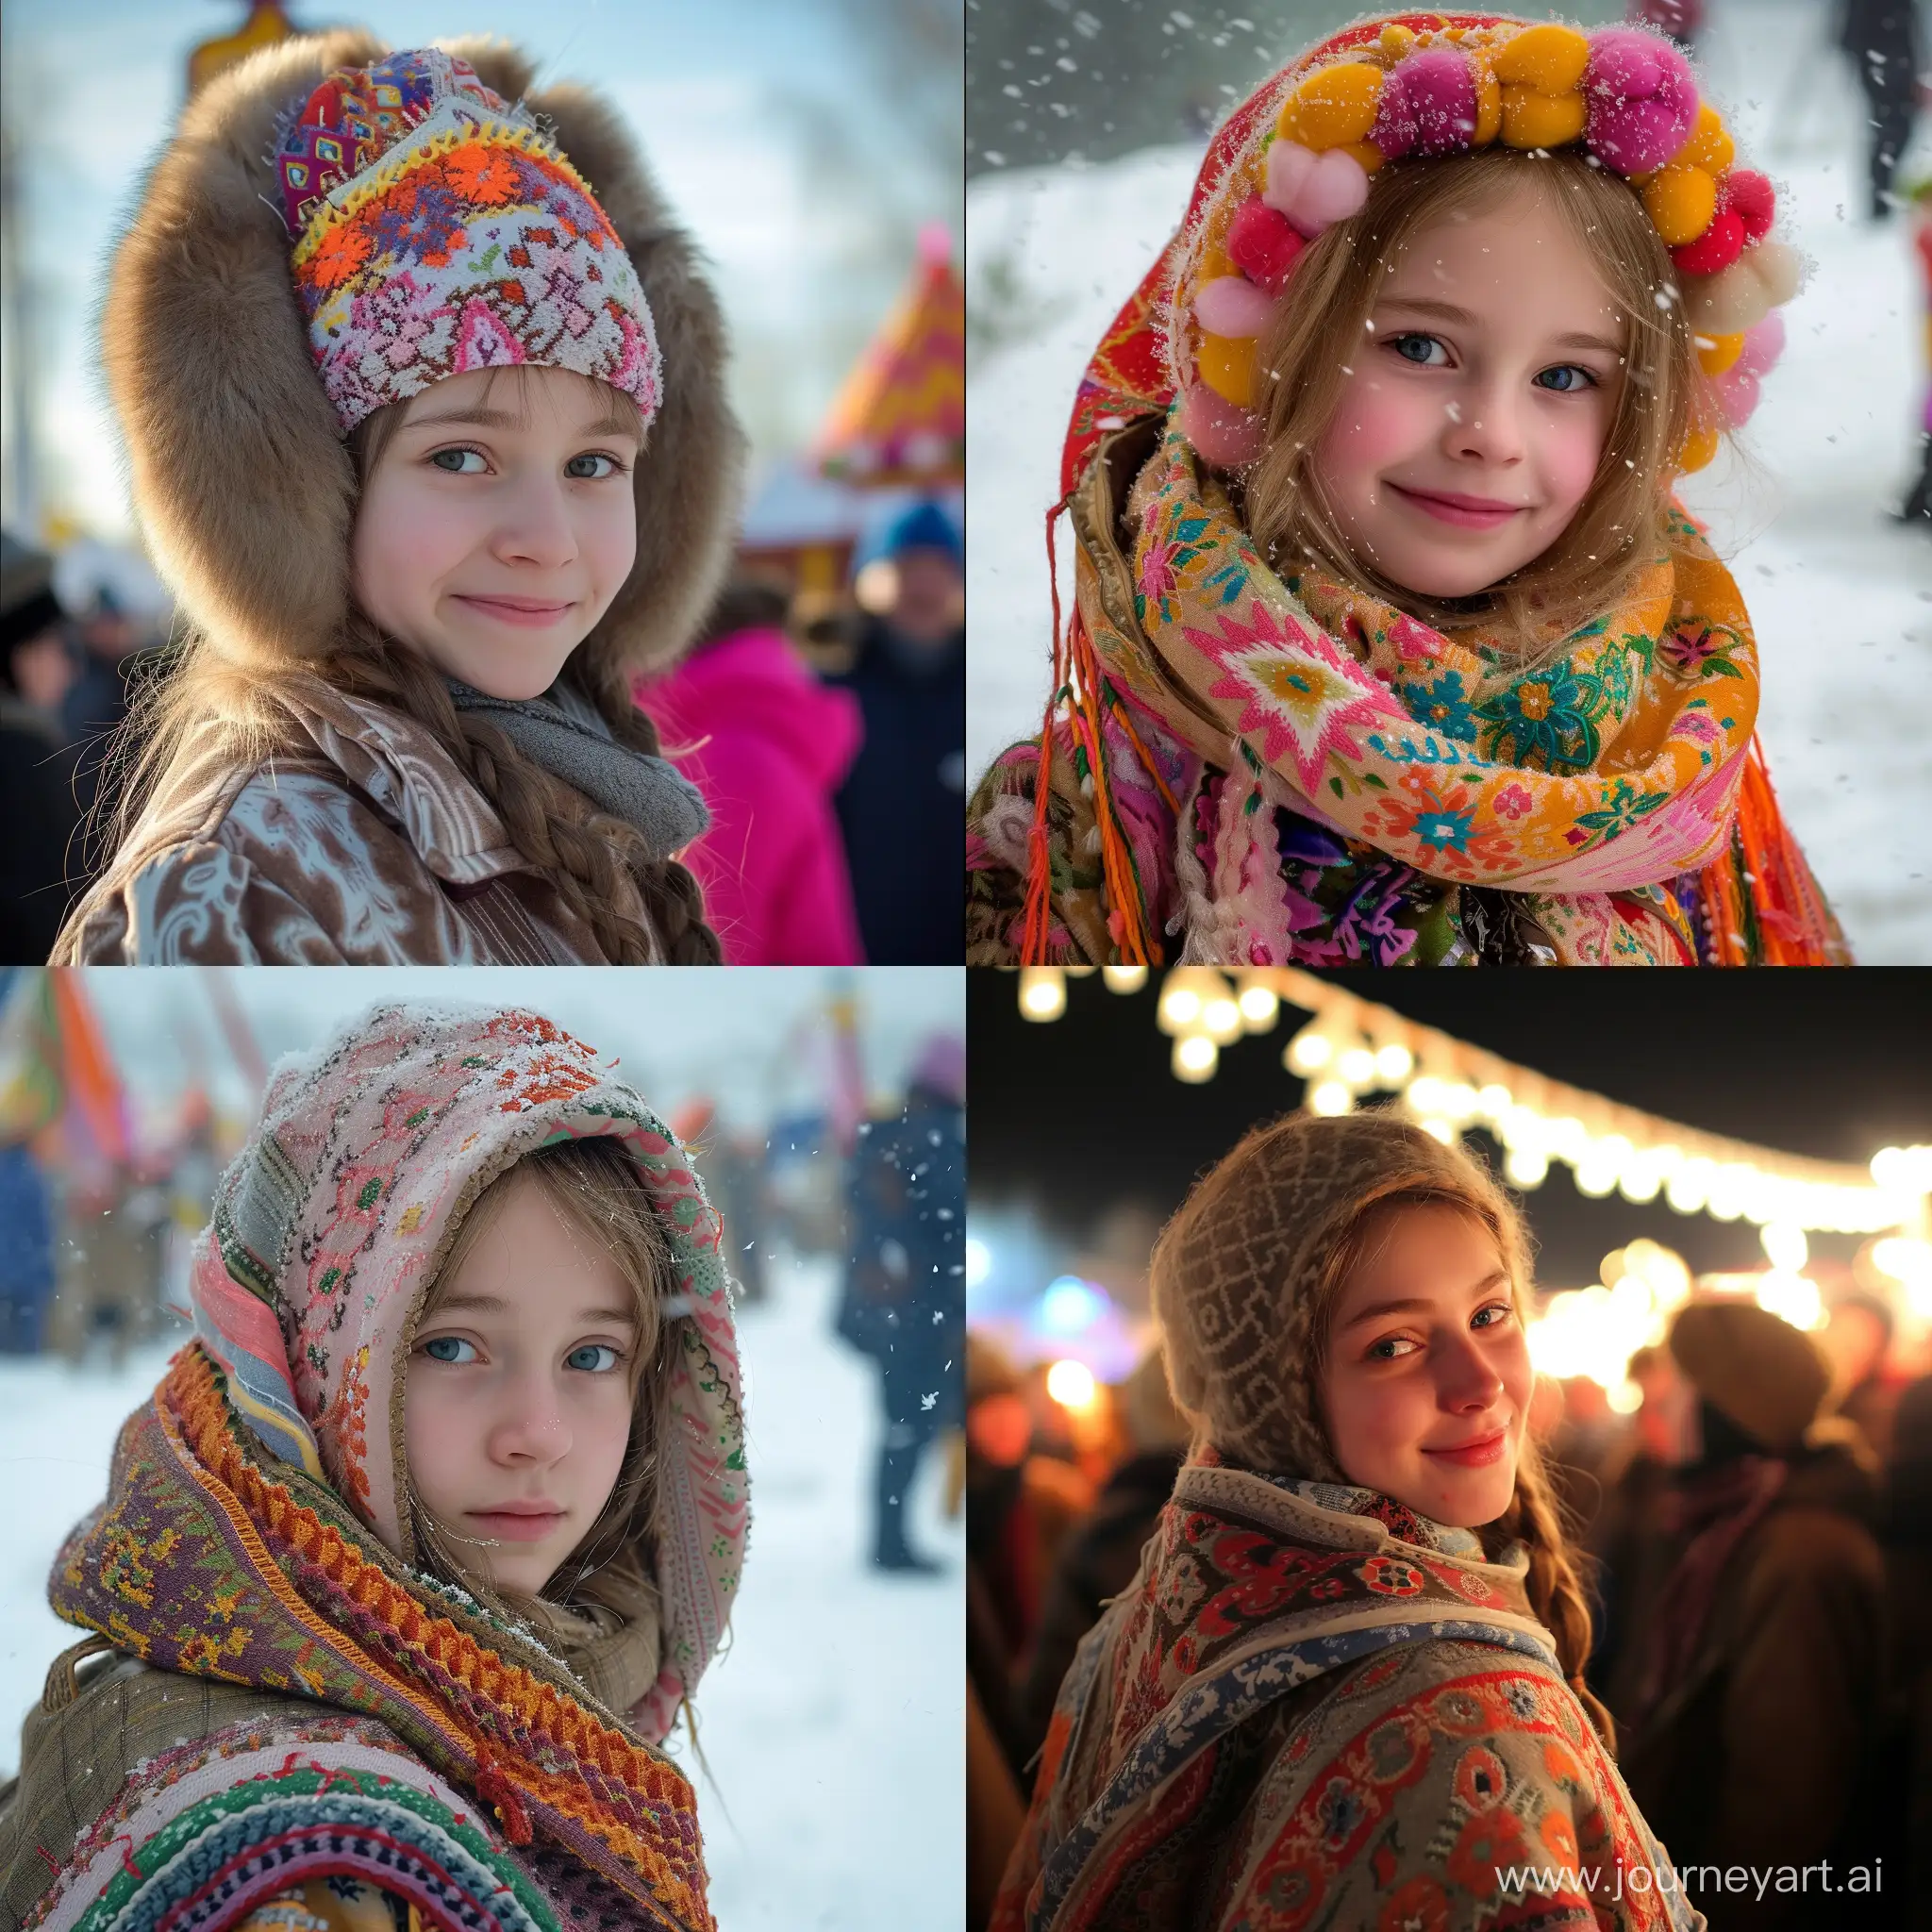 Joyful-Girl-Celebrating-Maslenitsa-Festival